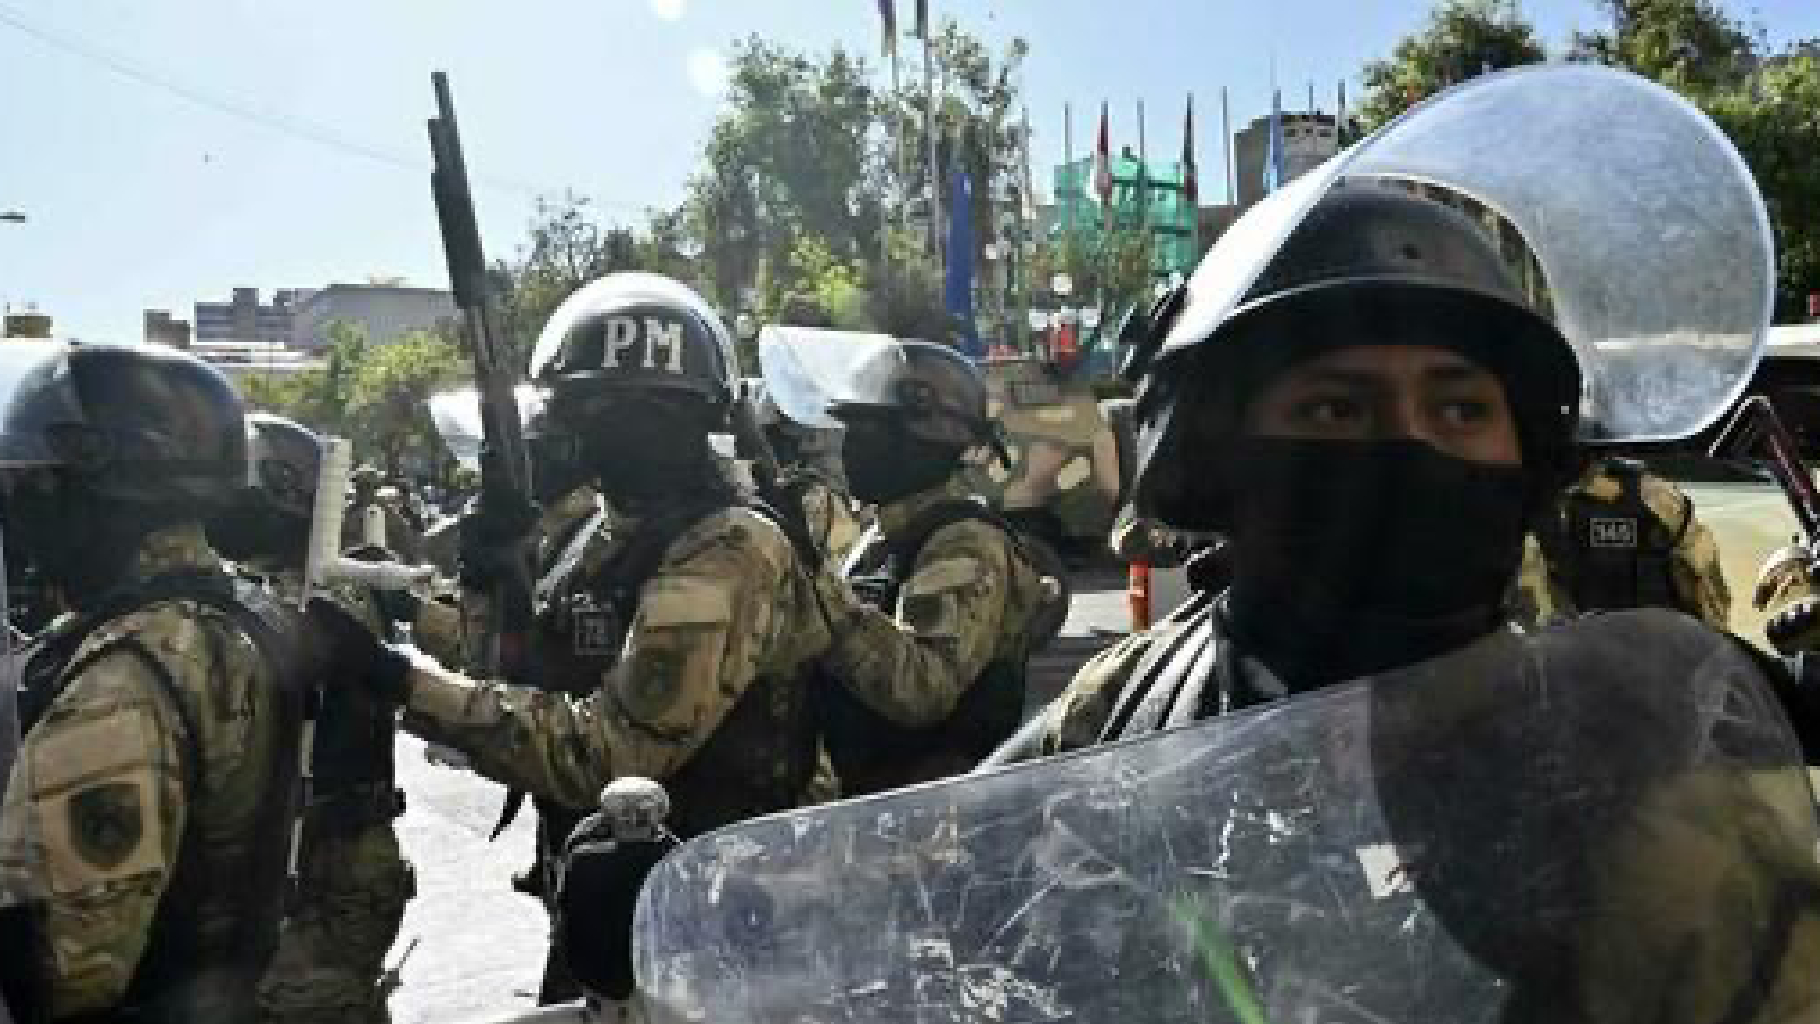 Colpo di Stato in Bolivia: i militari irrompono nel palazzo del governo